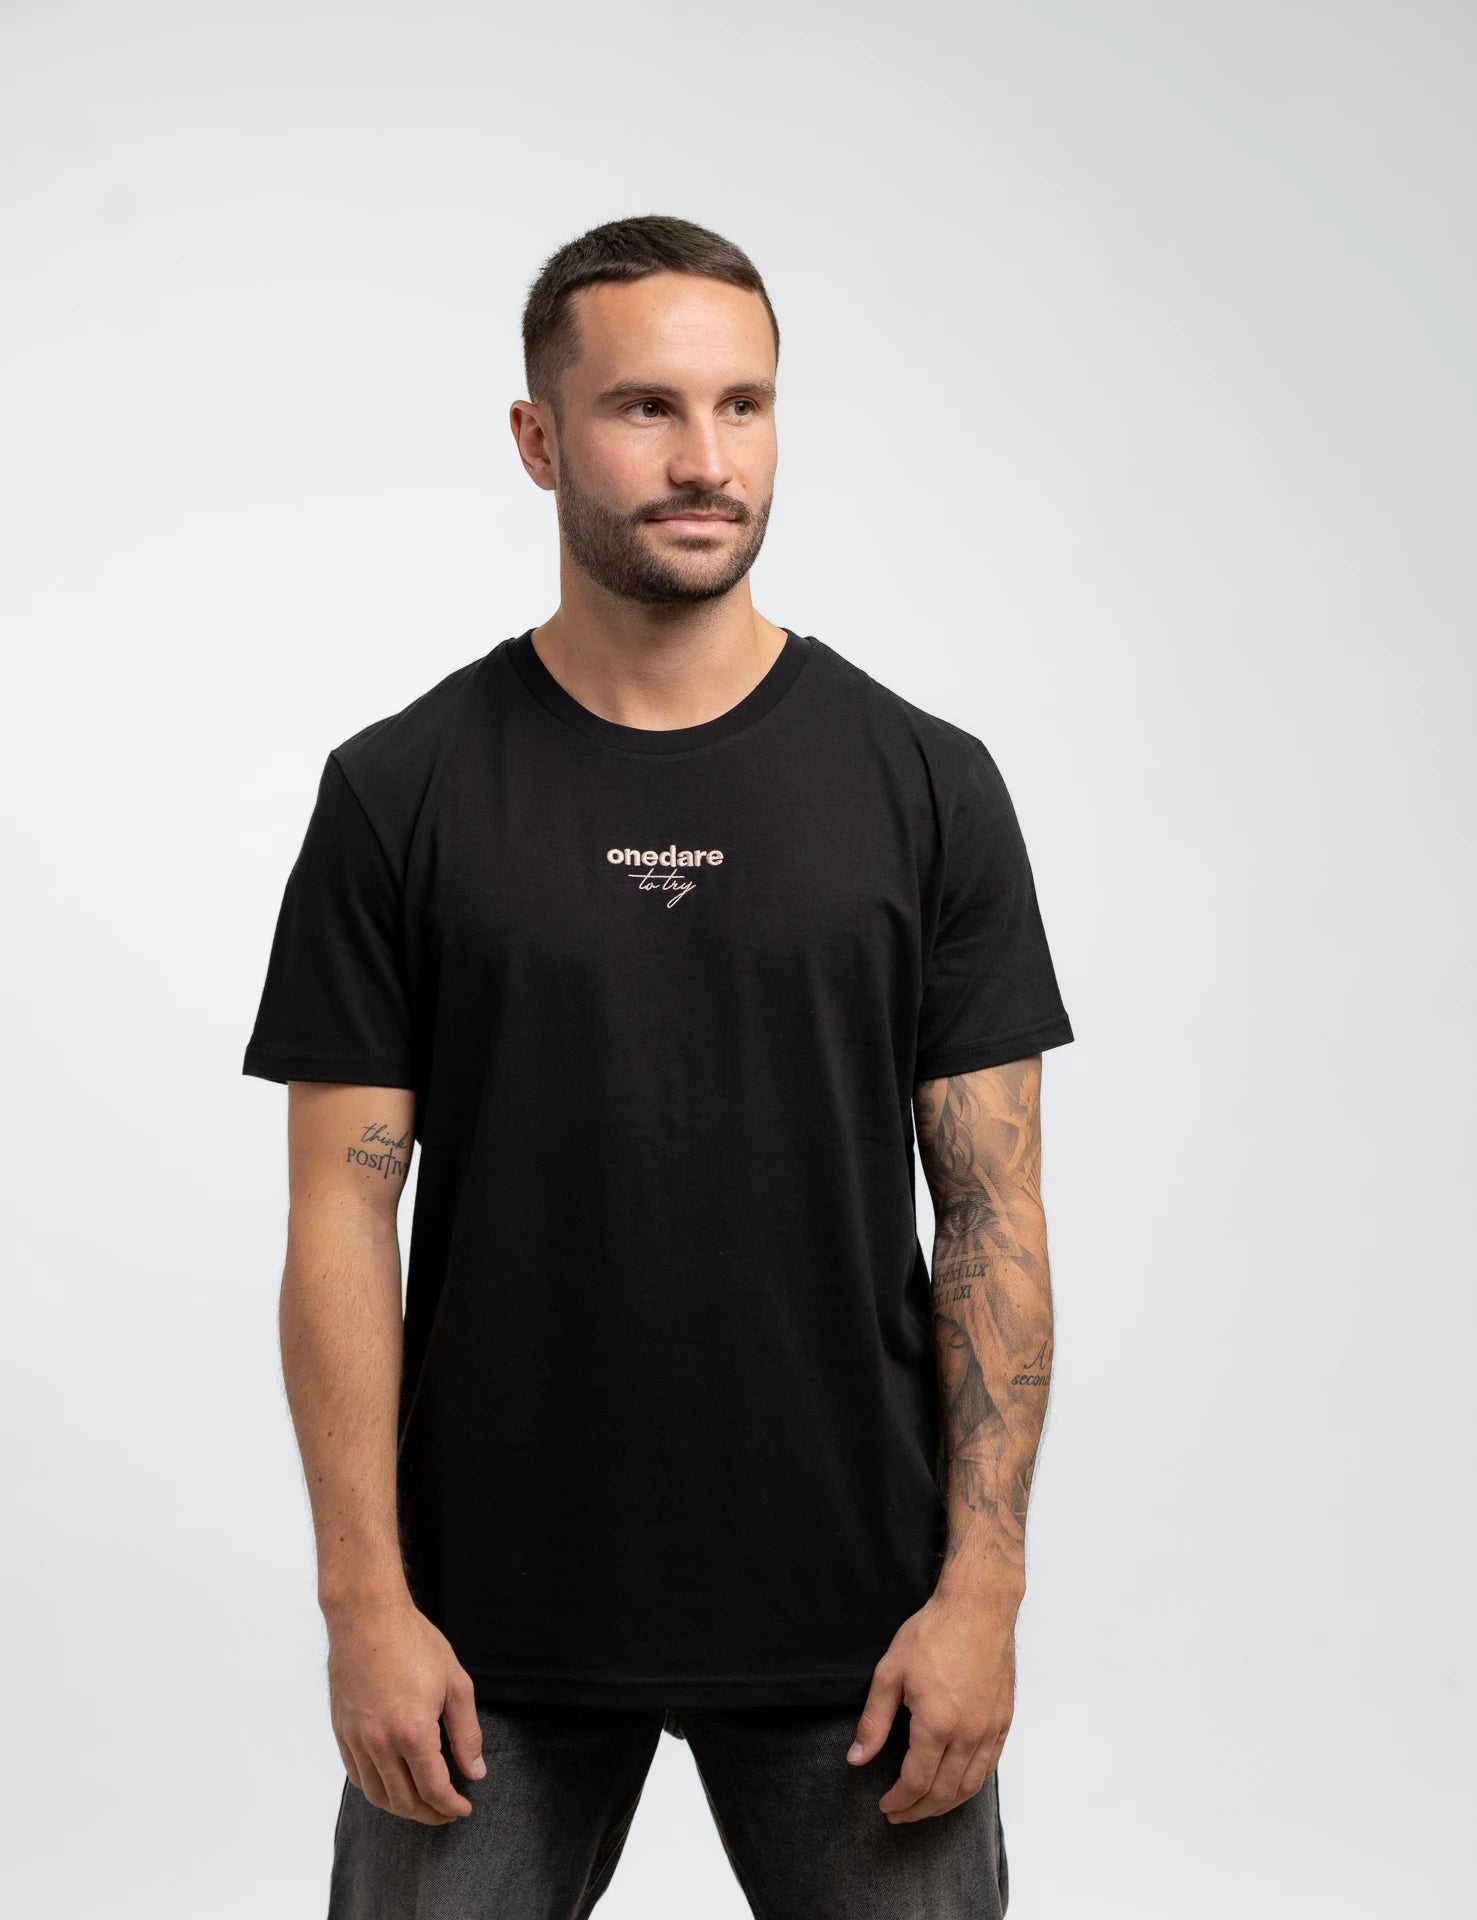 Black classic Bio-Baumwolle T-Shirt mit beigen, onedare totry Stick mittig auf der Brust.